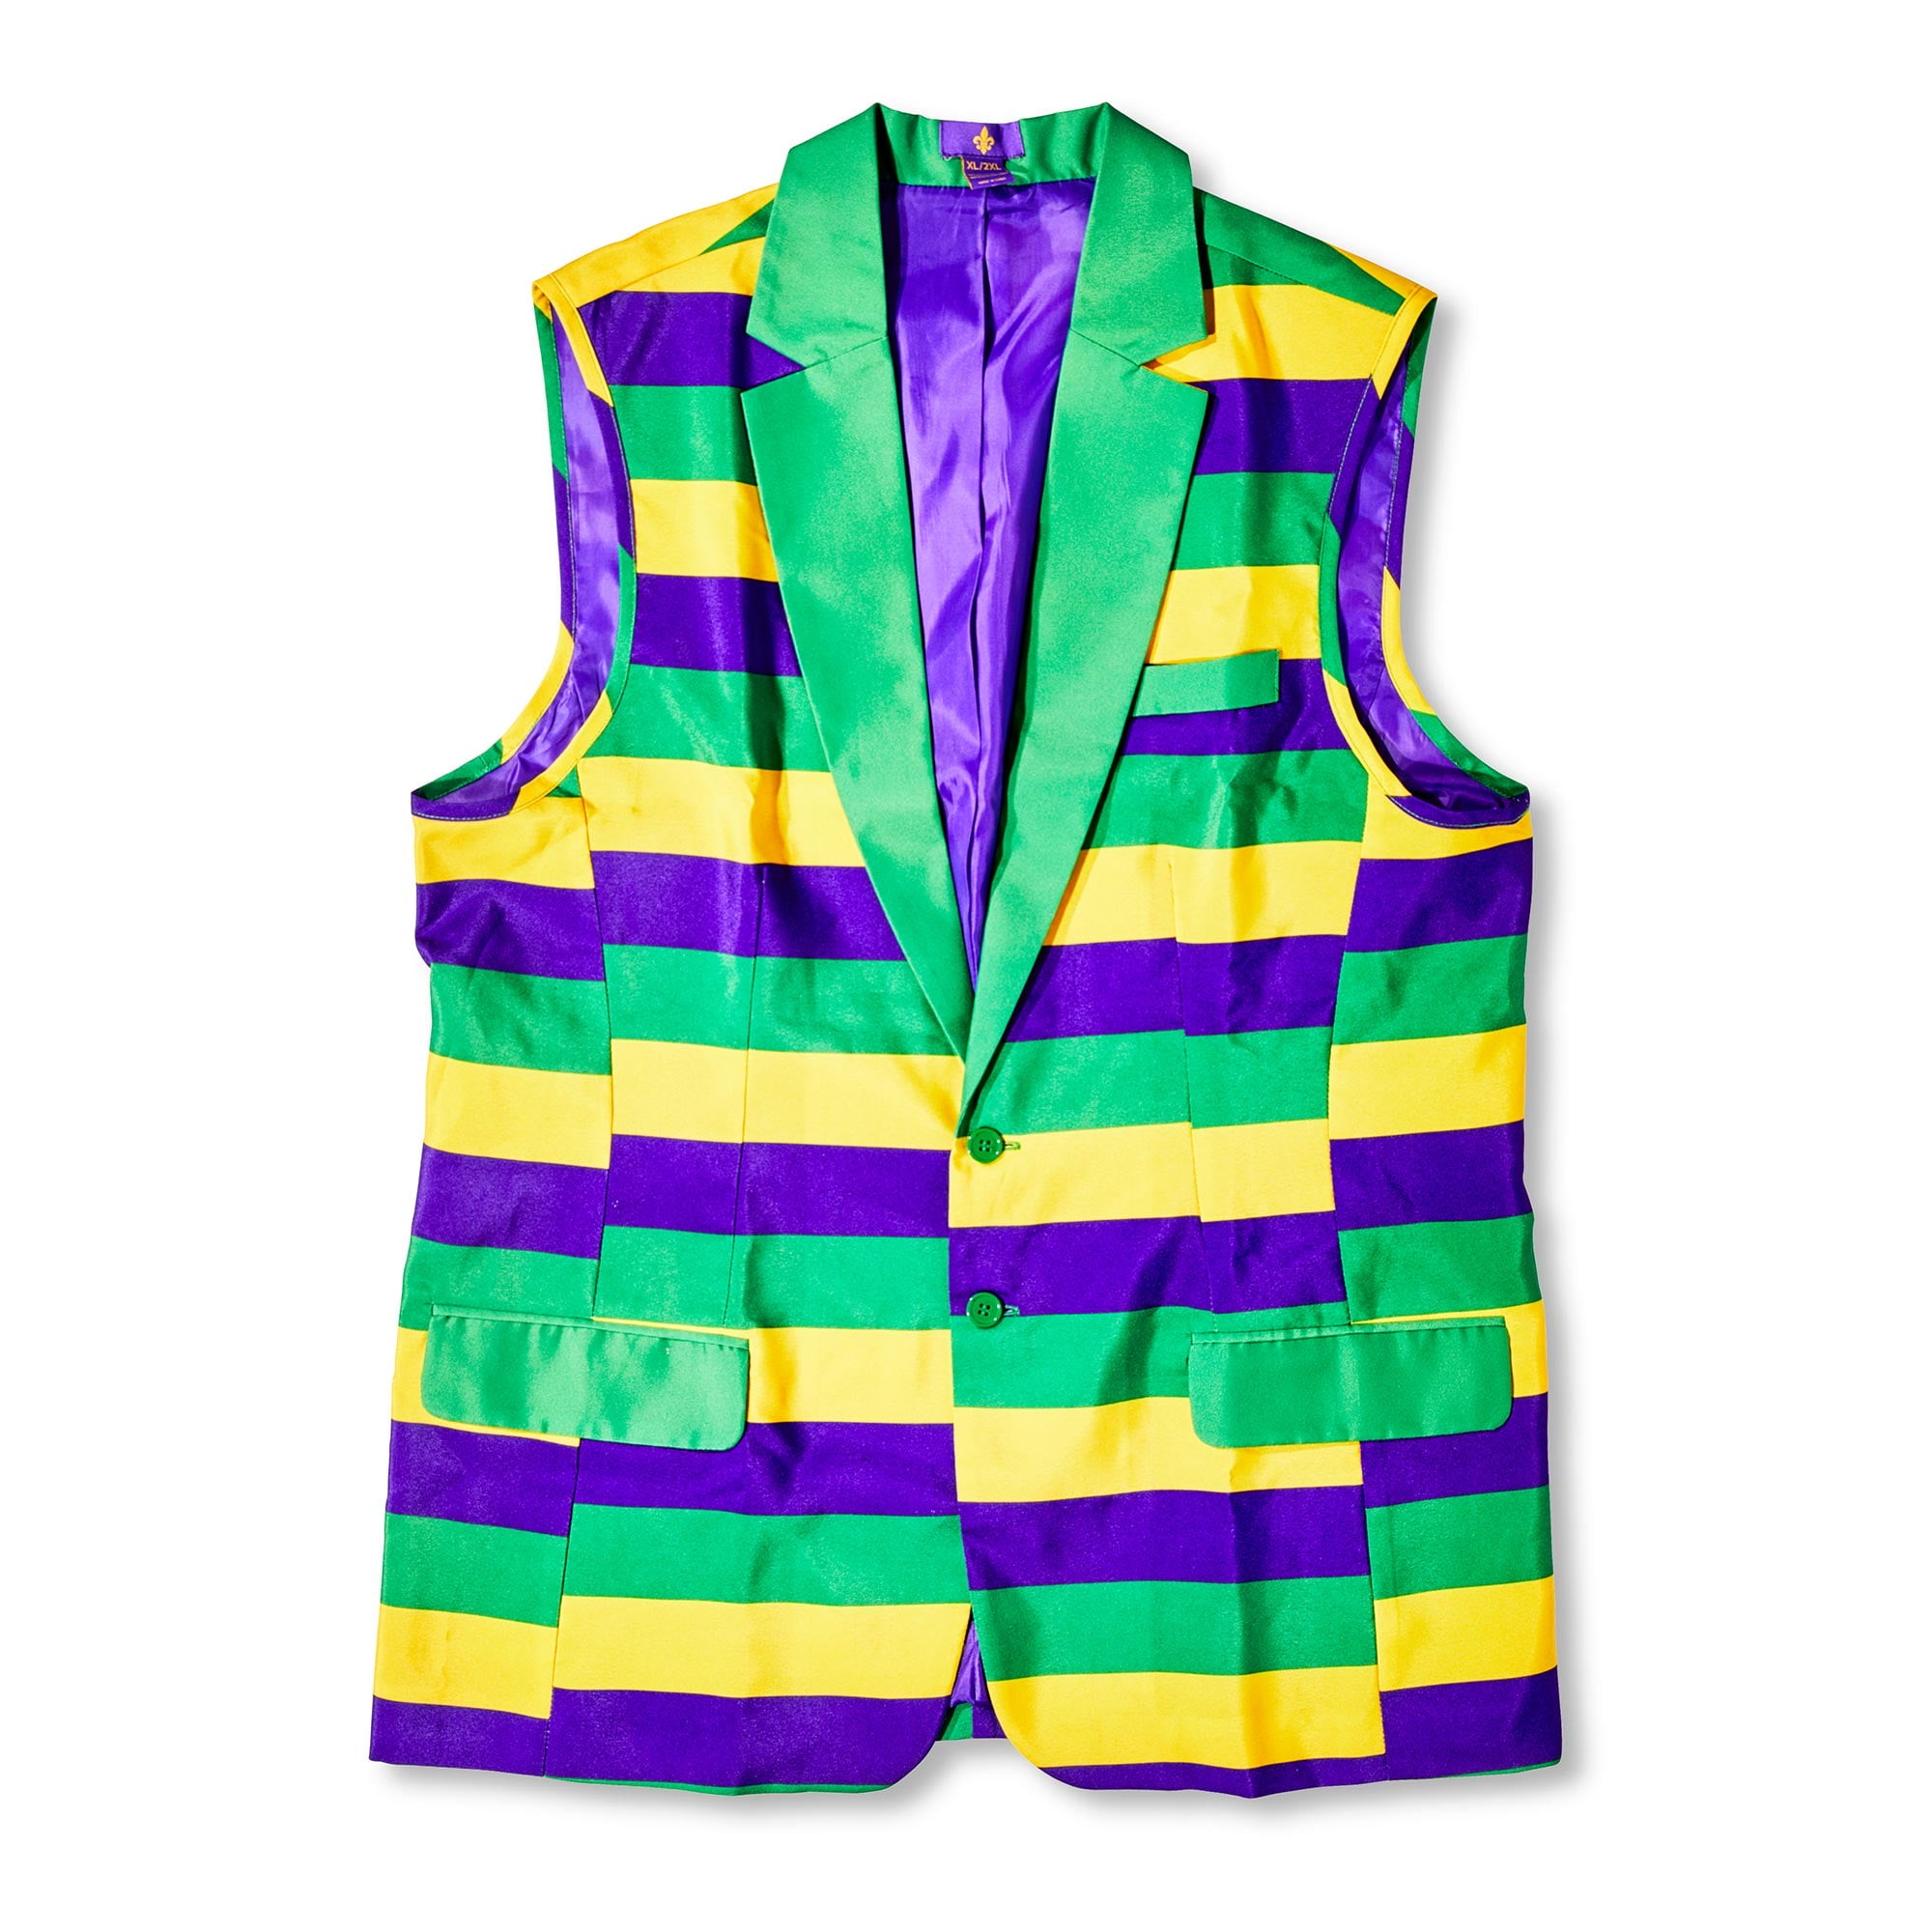 Mardi Gras Multi-Color Sleeveless Blazer, XL/2X, by Way To Celebrate ...